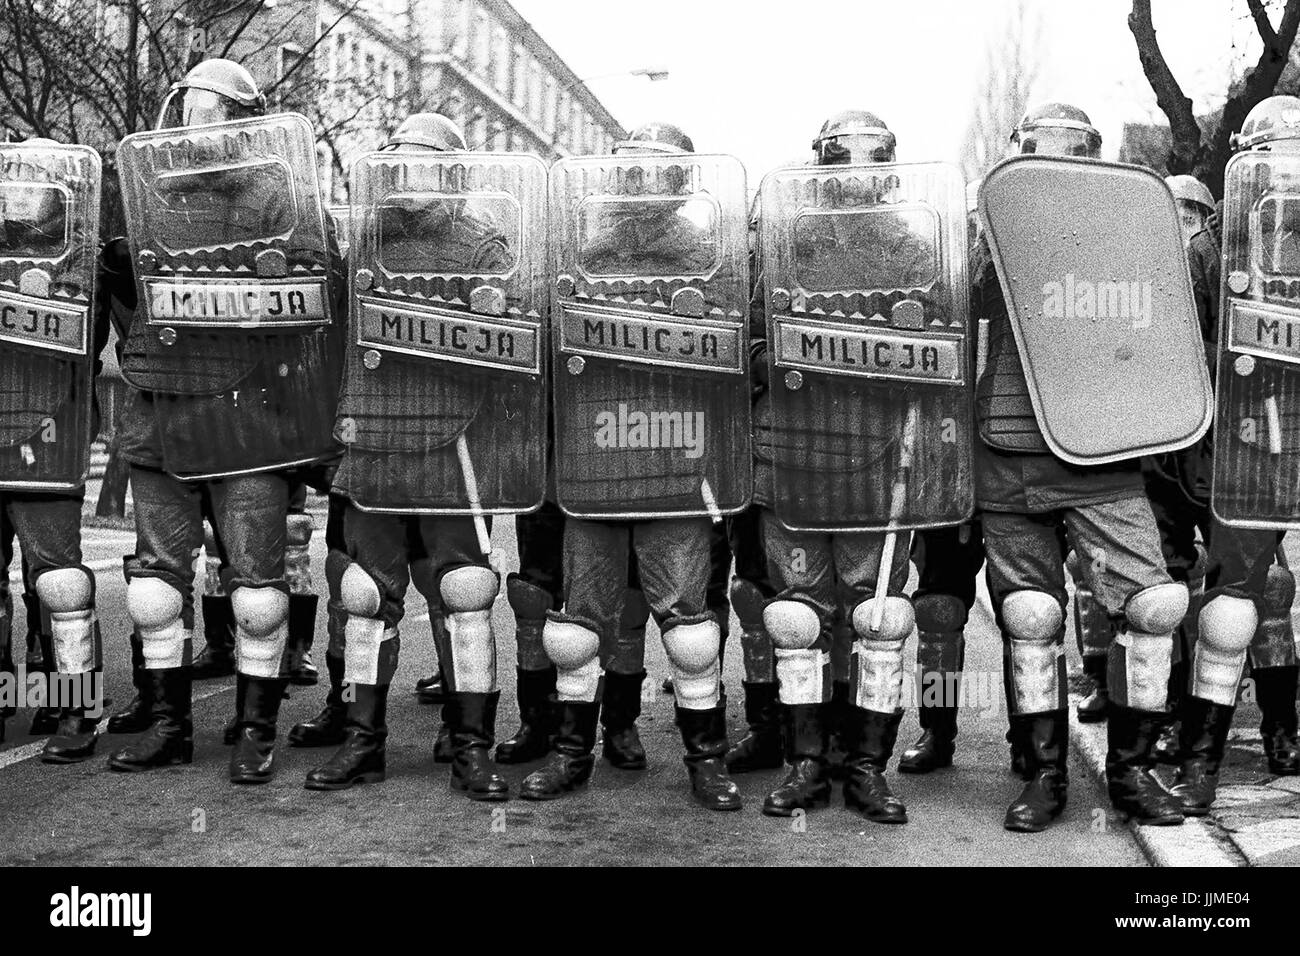 La police anti-émeute a appelé, Milicja ou PHONIC, 1988 à Poznan, Pologne communiste. (Le nom officiel - Réserves de la motorisés de la milice des citoyens). Le temps de la révolution. Banque D'Images